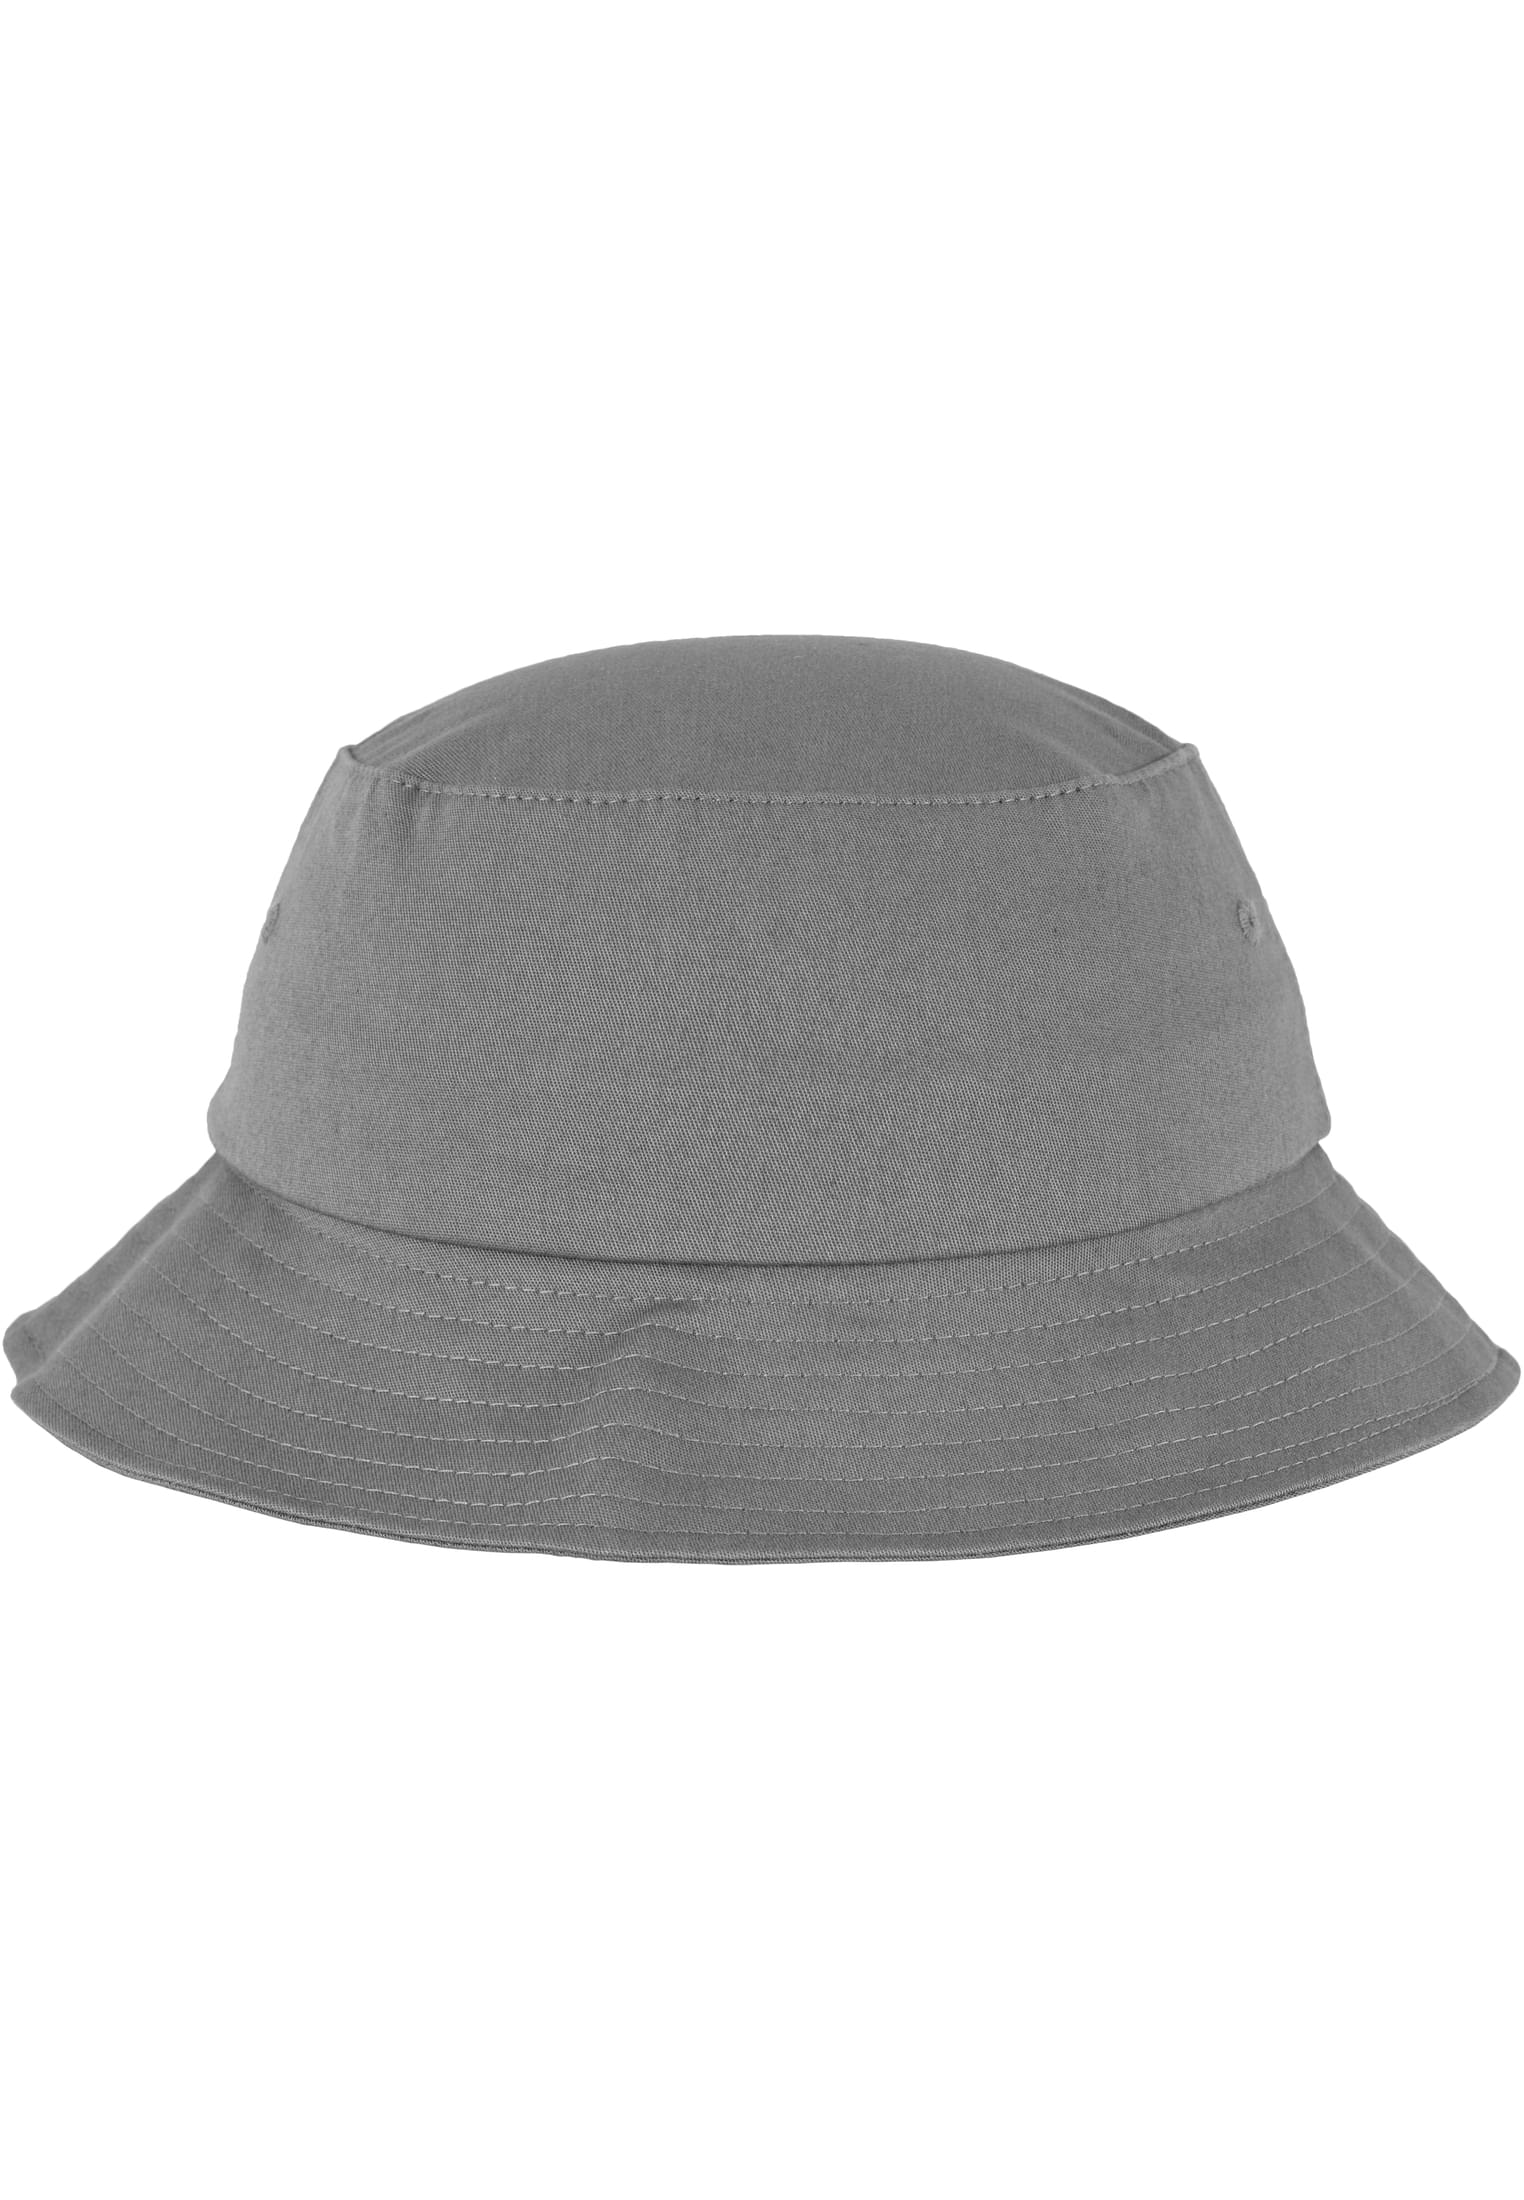 Twill Bucket Flexfit Cotton Hat-5003